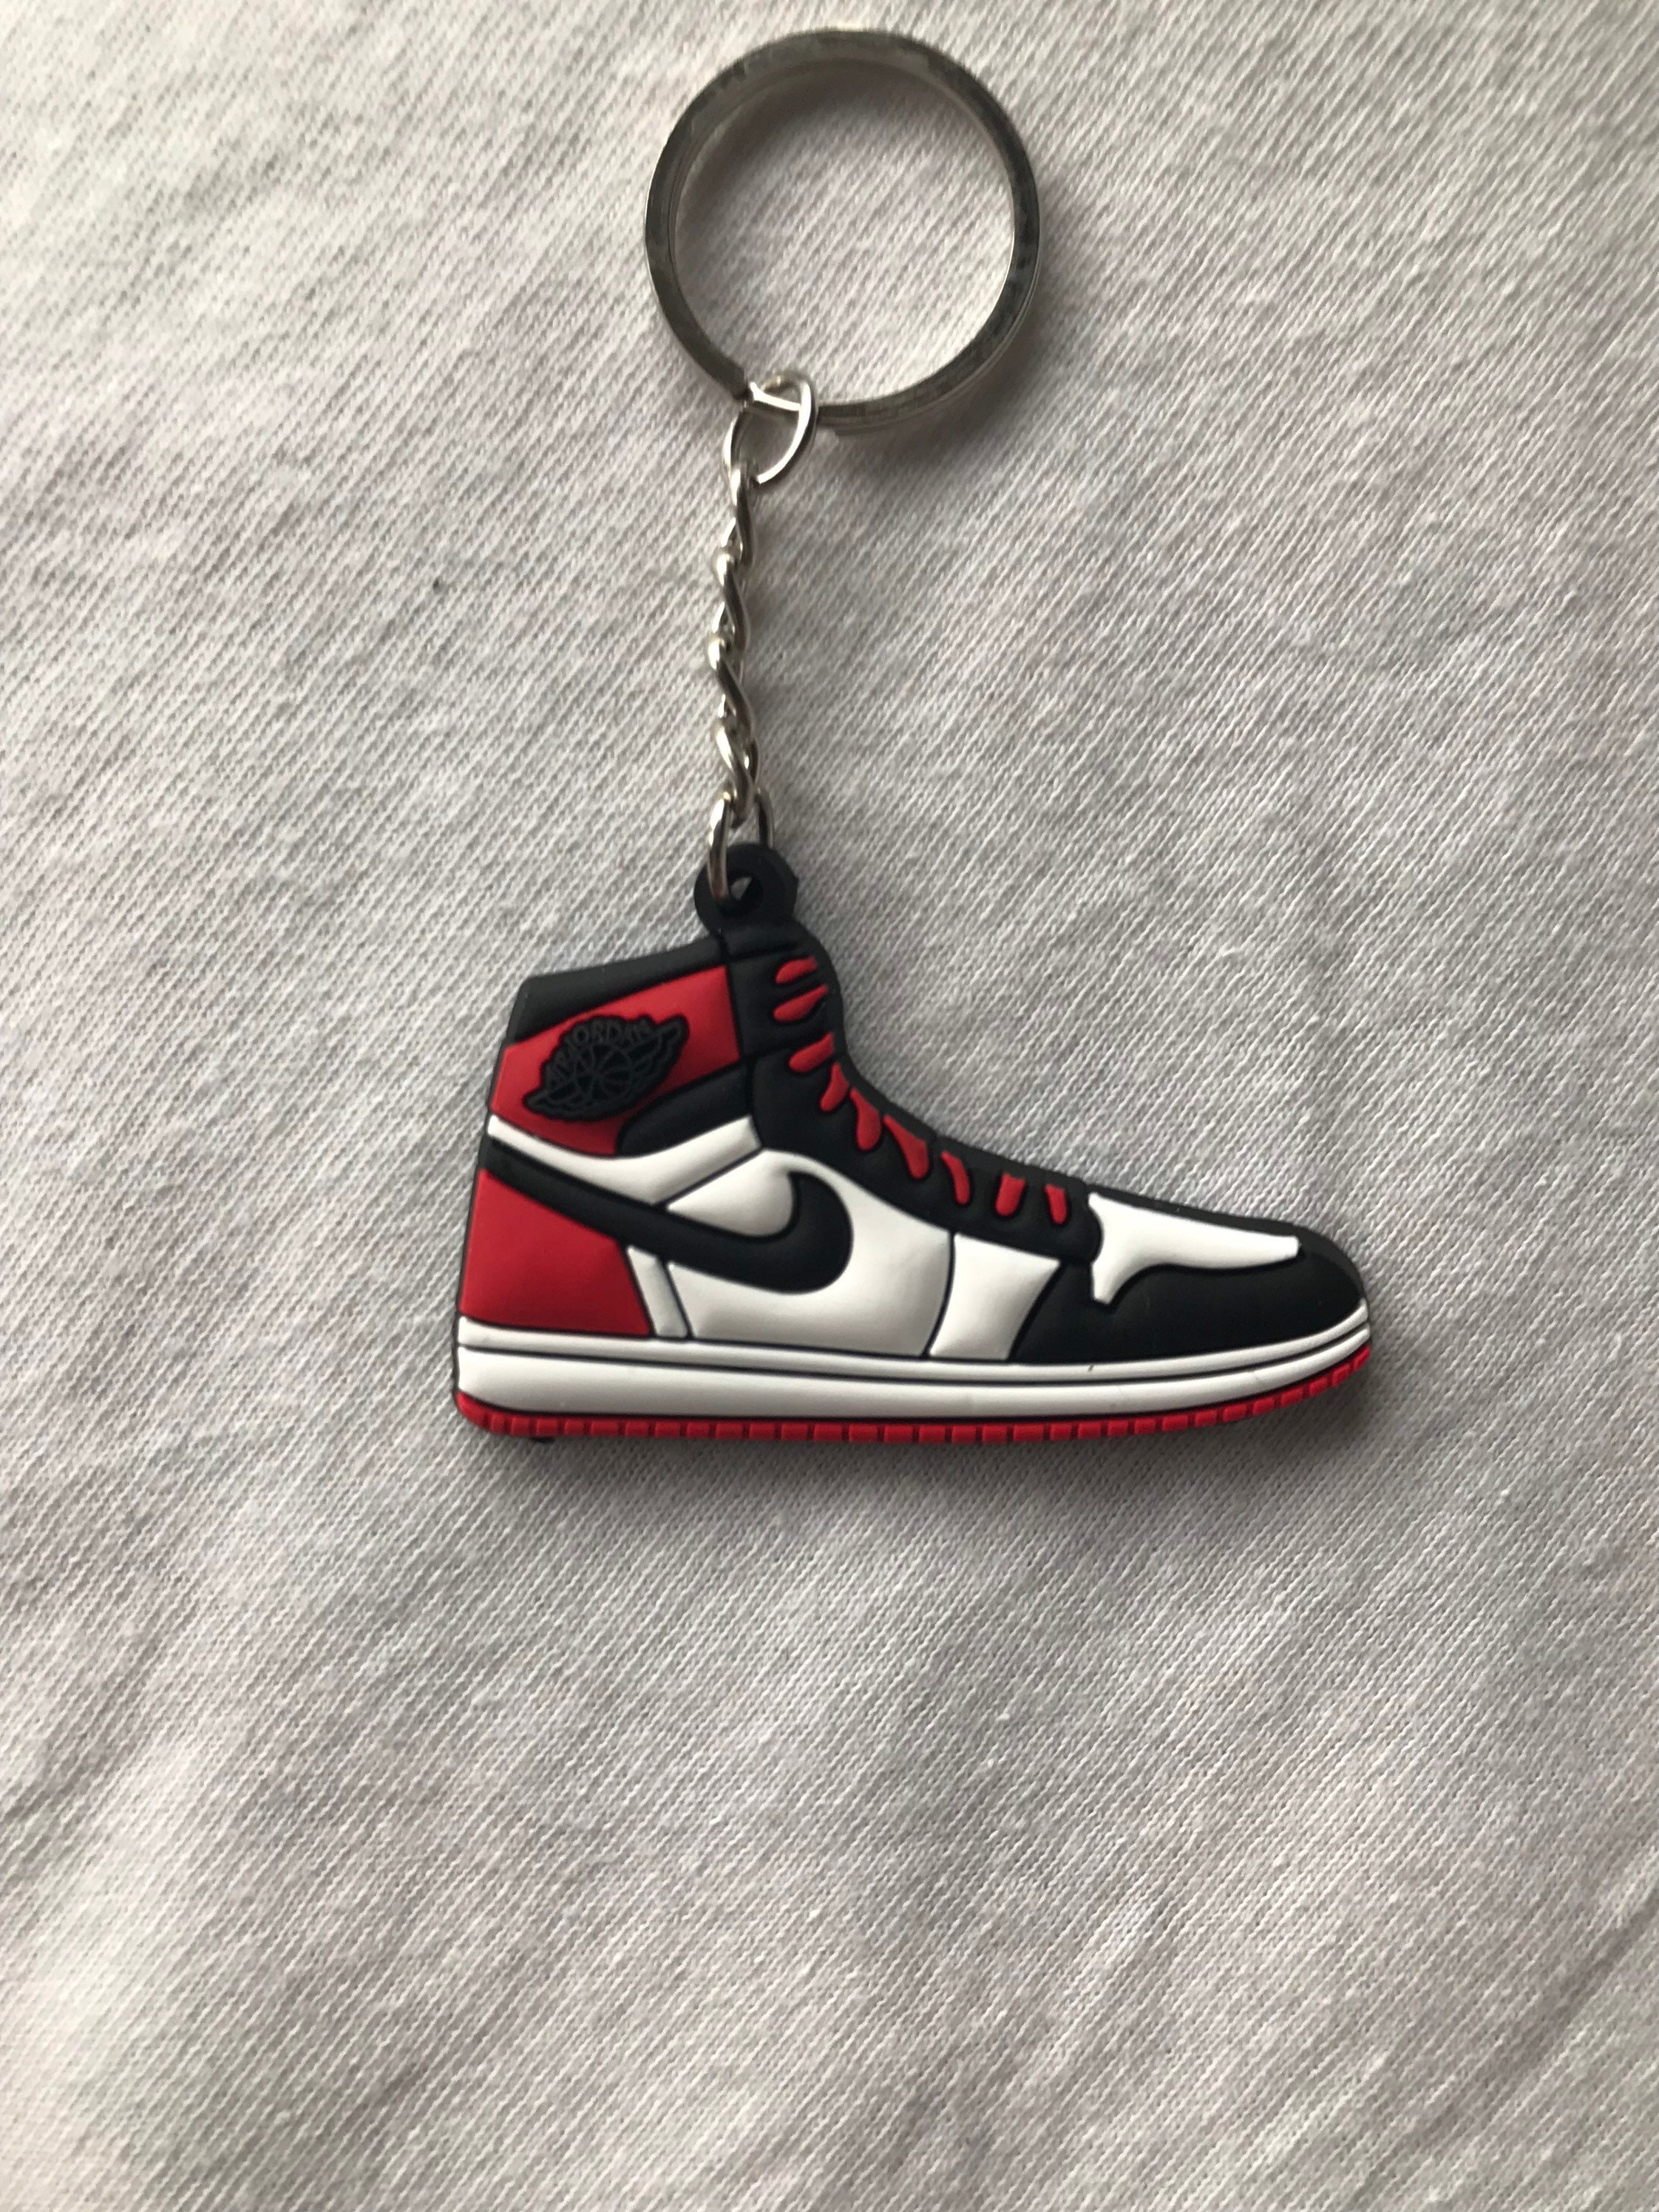 Nike Jordan Llaveros Personalizados / Llaveros - Etsy España